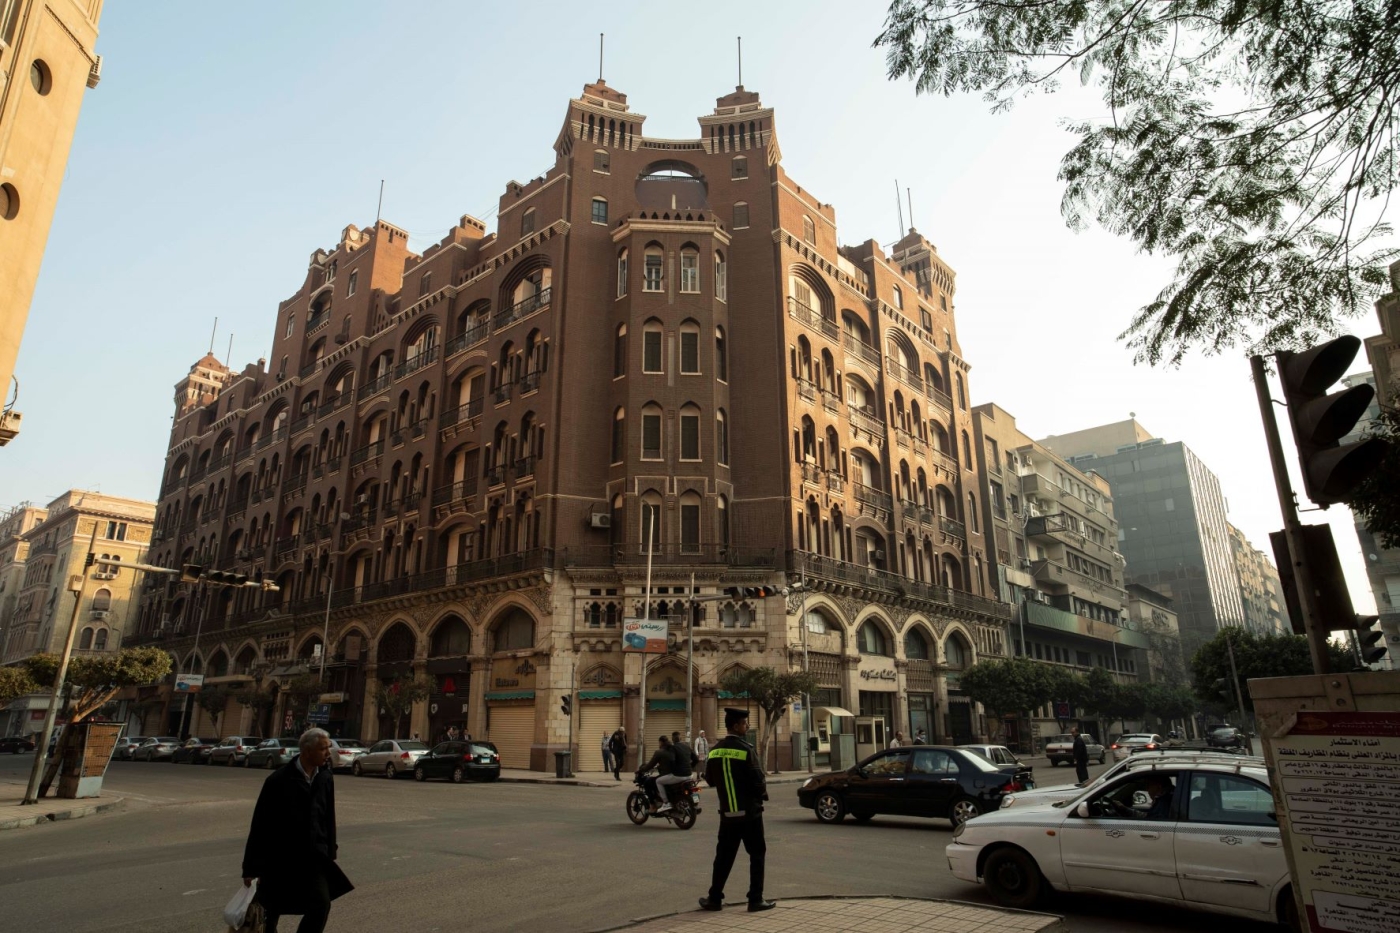 Le centre-ville du Caire a été imaginé par des urbanistes français à la fin du XIXe siècle (MEE/Xenia Nikolskaya)